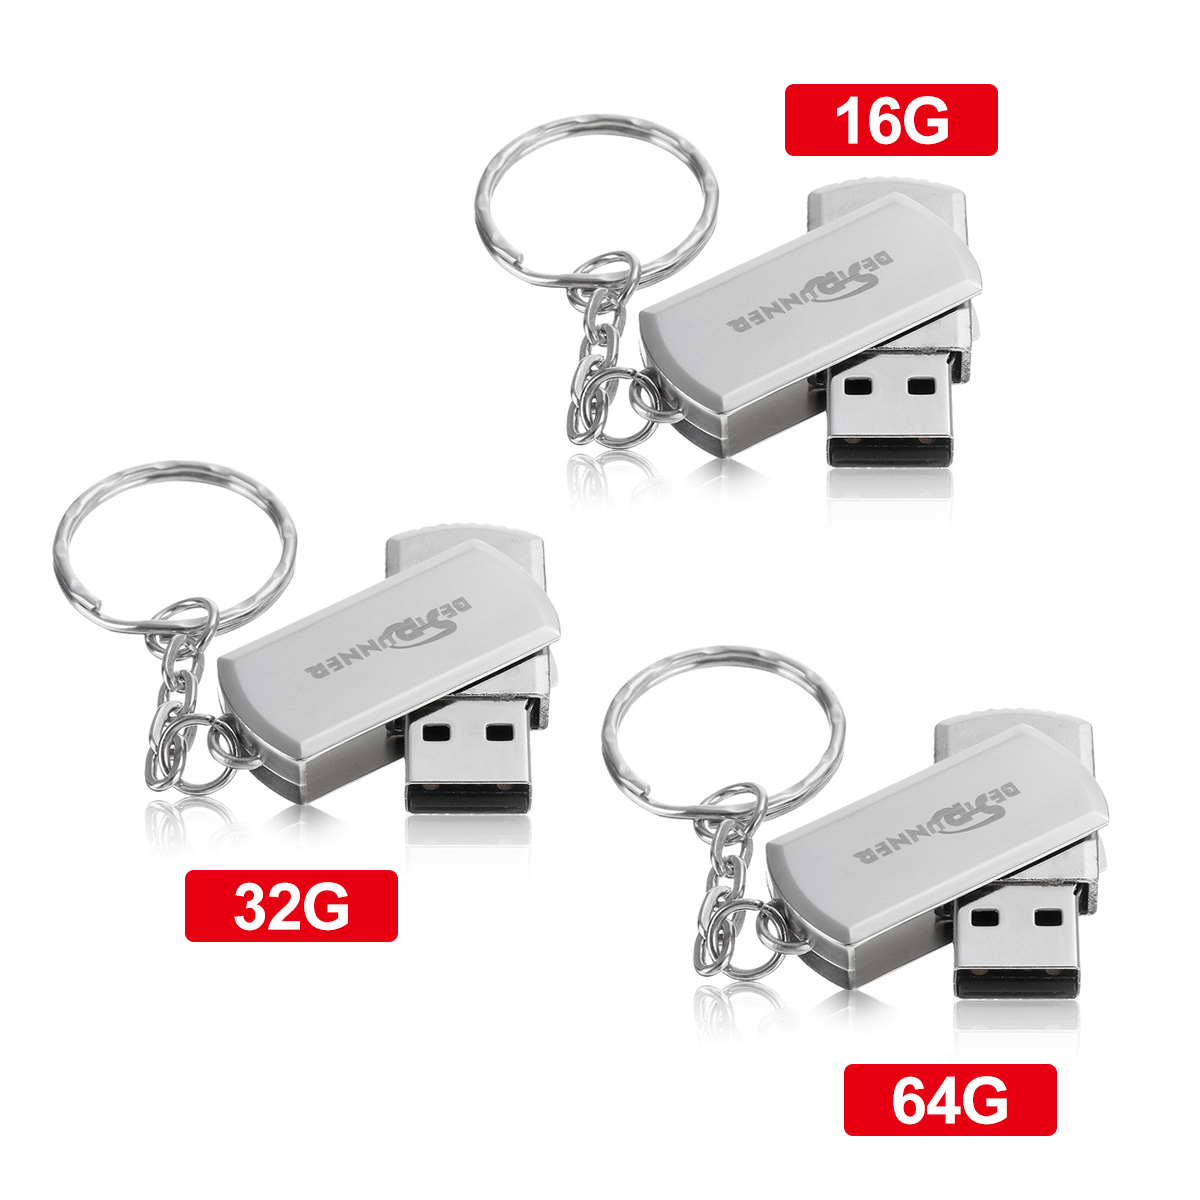 USB-Flash-Drive-USB-20-16GB-32GB-64GB-360ordm-Rotation-Metal-Flash-Memory-Card-USB-Stick-Pen-Drive-U-1718772-3